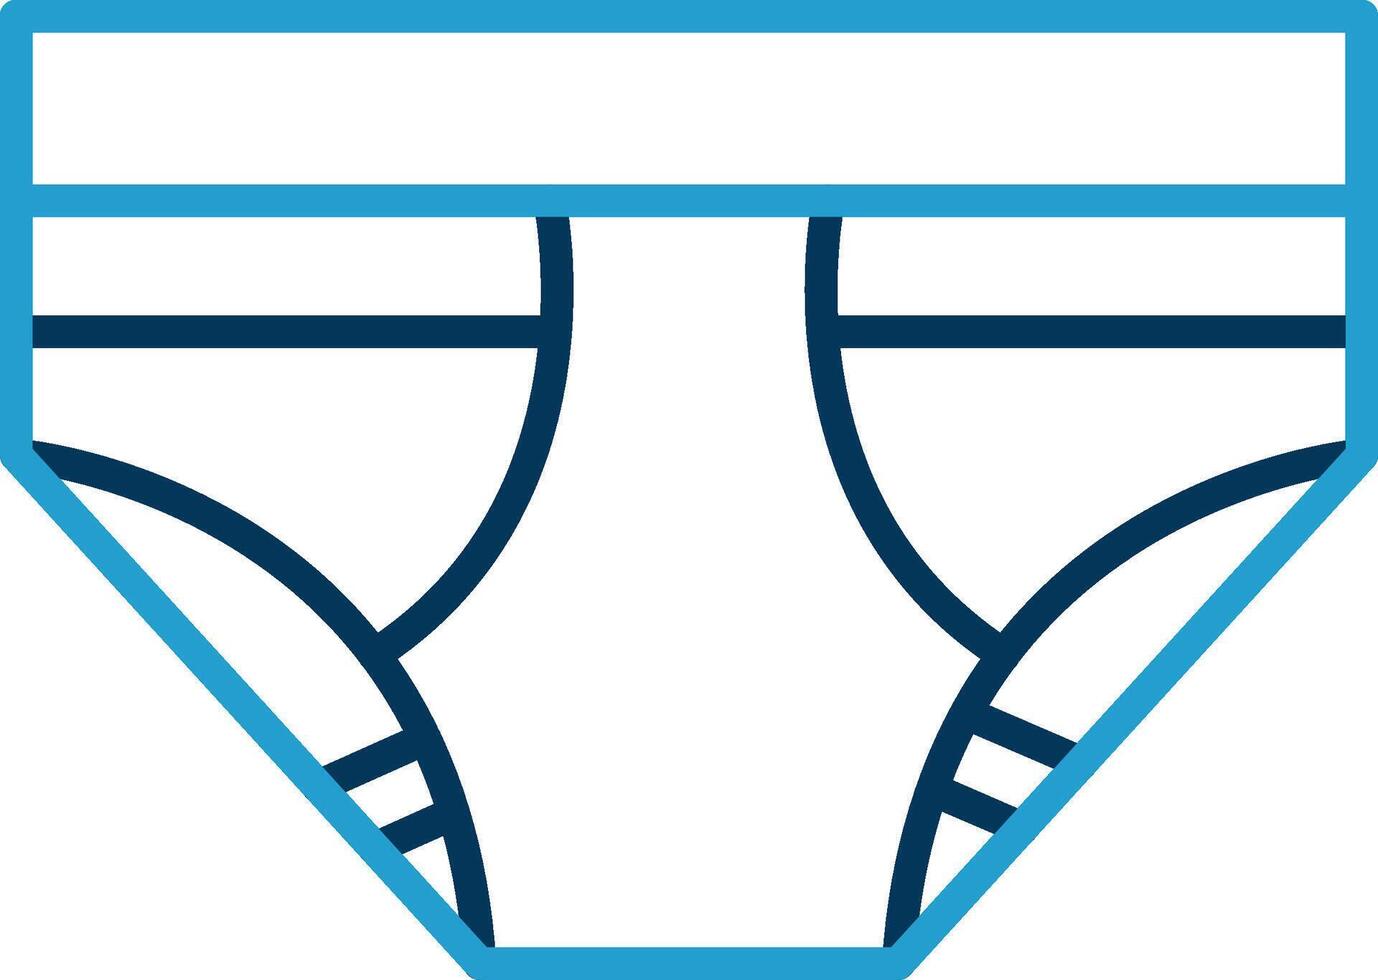 Underwear Line Blue Two Color Icon vector